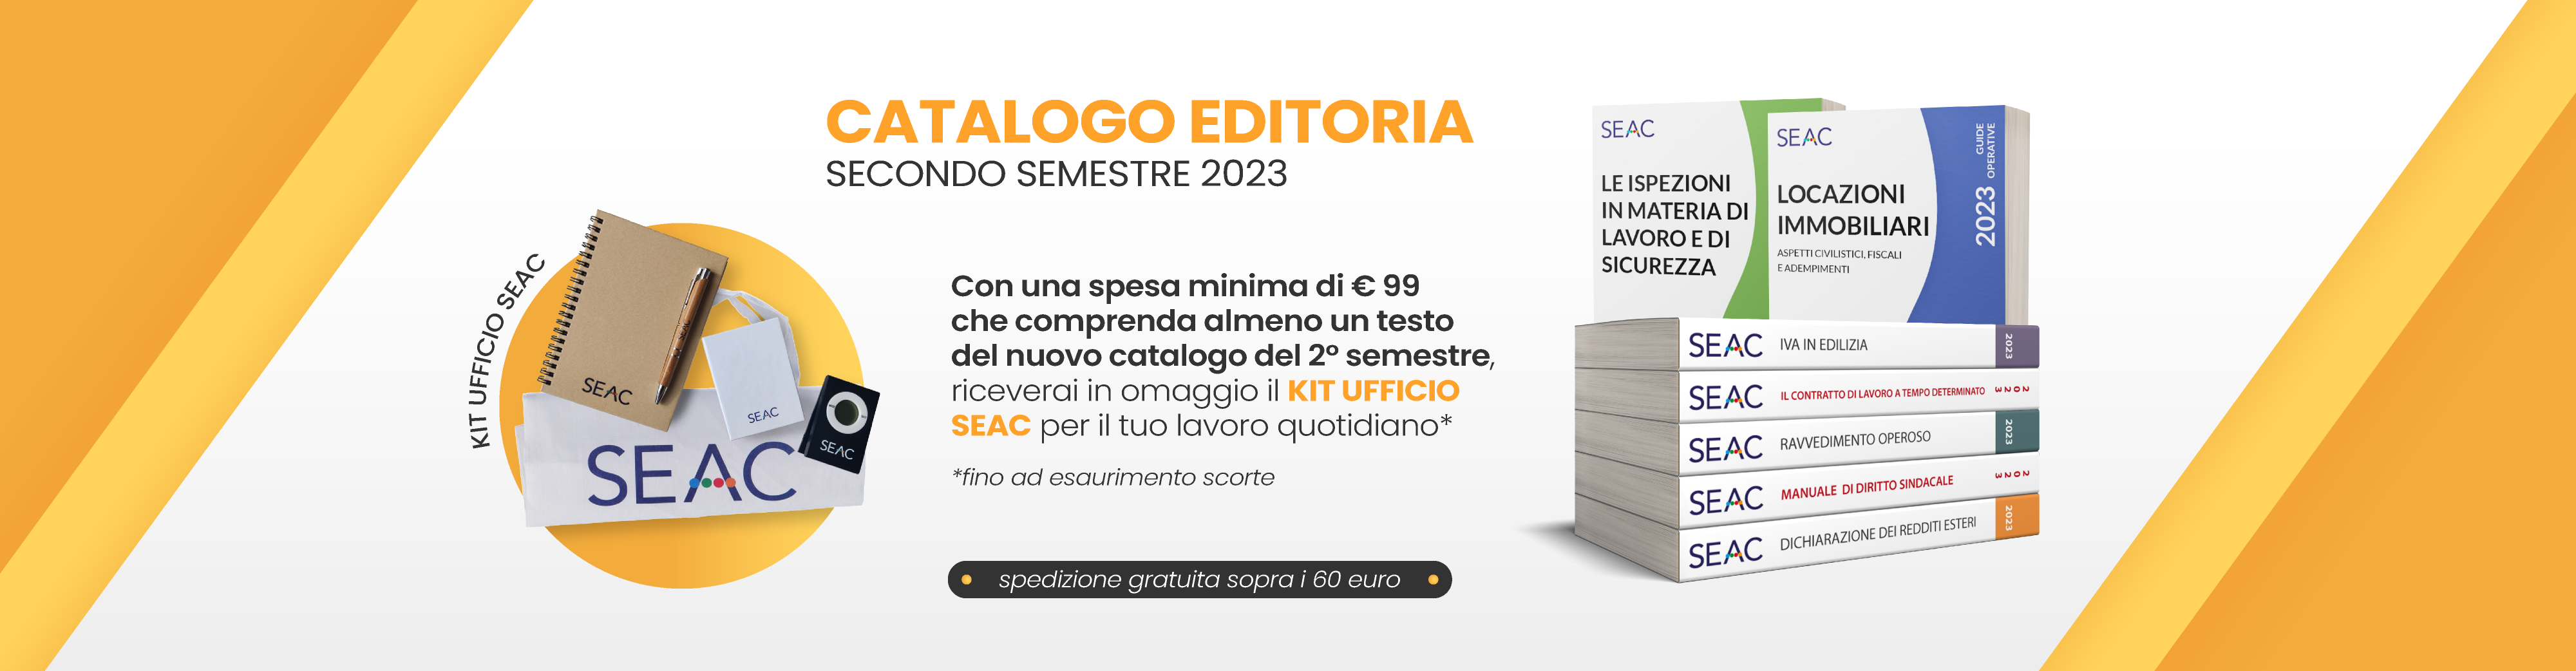 Scopri il catalogo Editoria Seac 2° semestre 2023!